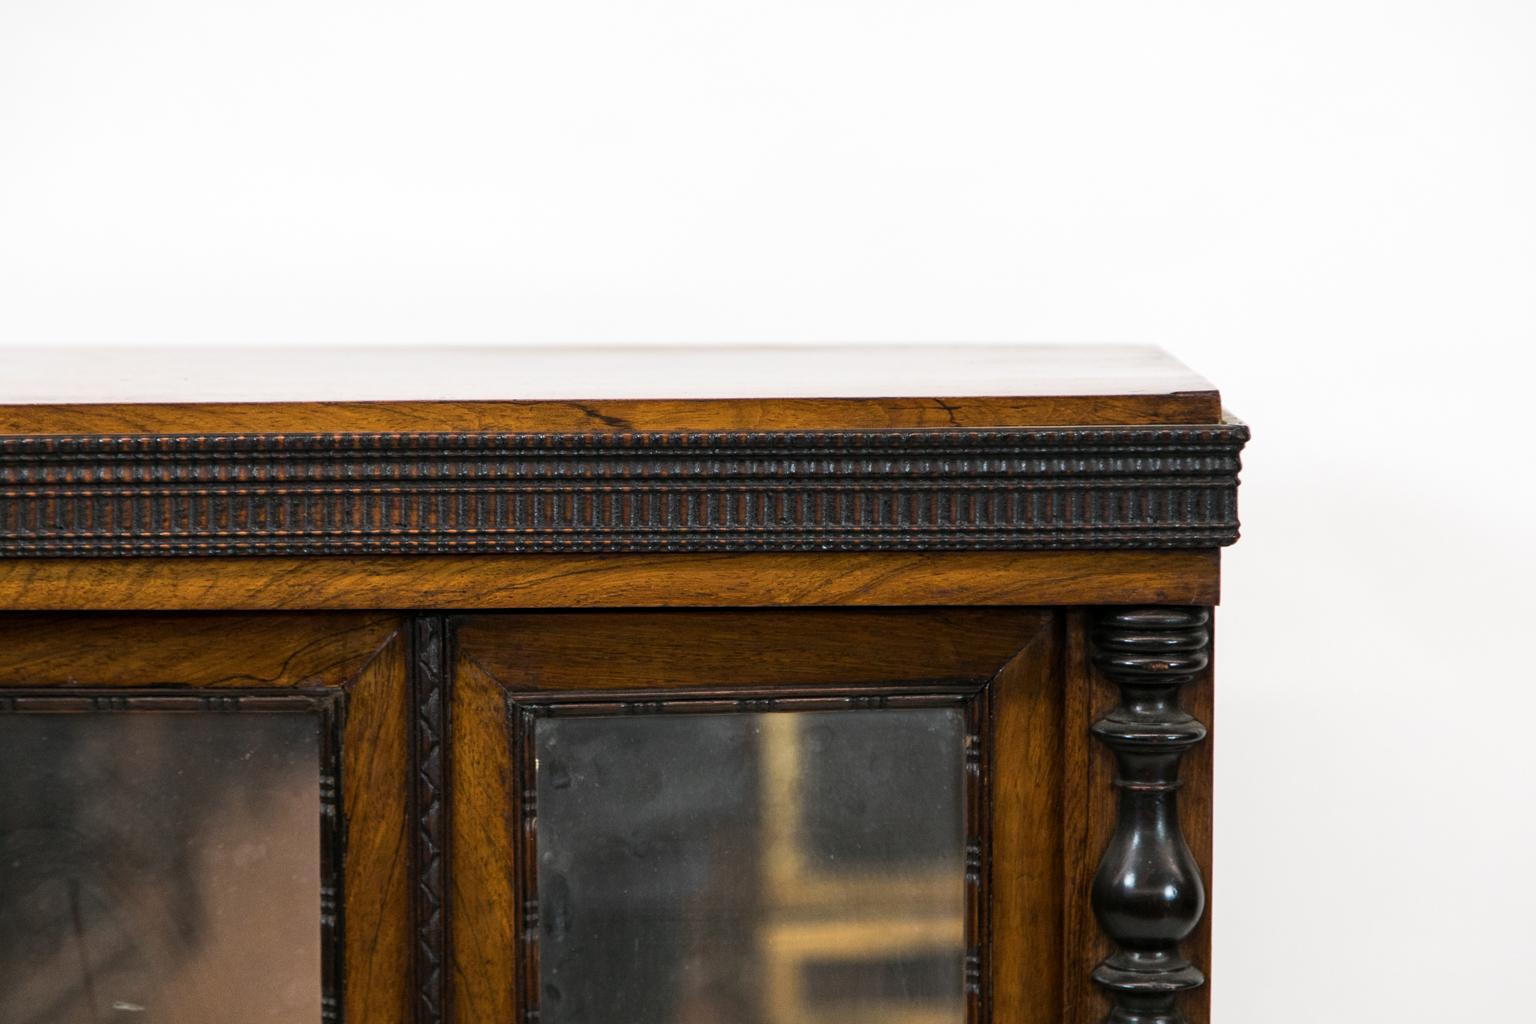 Geschnitzt Englisch Palisander Miniatur-Schrank, geschnitzt angewandt Formen umgeben die Spiegel, Schublade und Basis Formteil. Die aufgesetzten vorderen Pfosten haben aufgesetzte Drehungen und das Innere hat vier Ablagen.
 